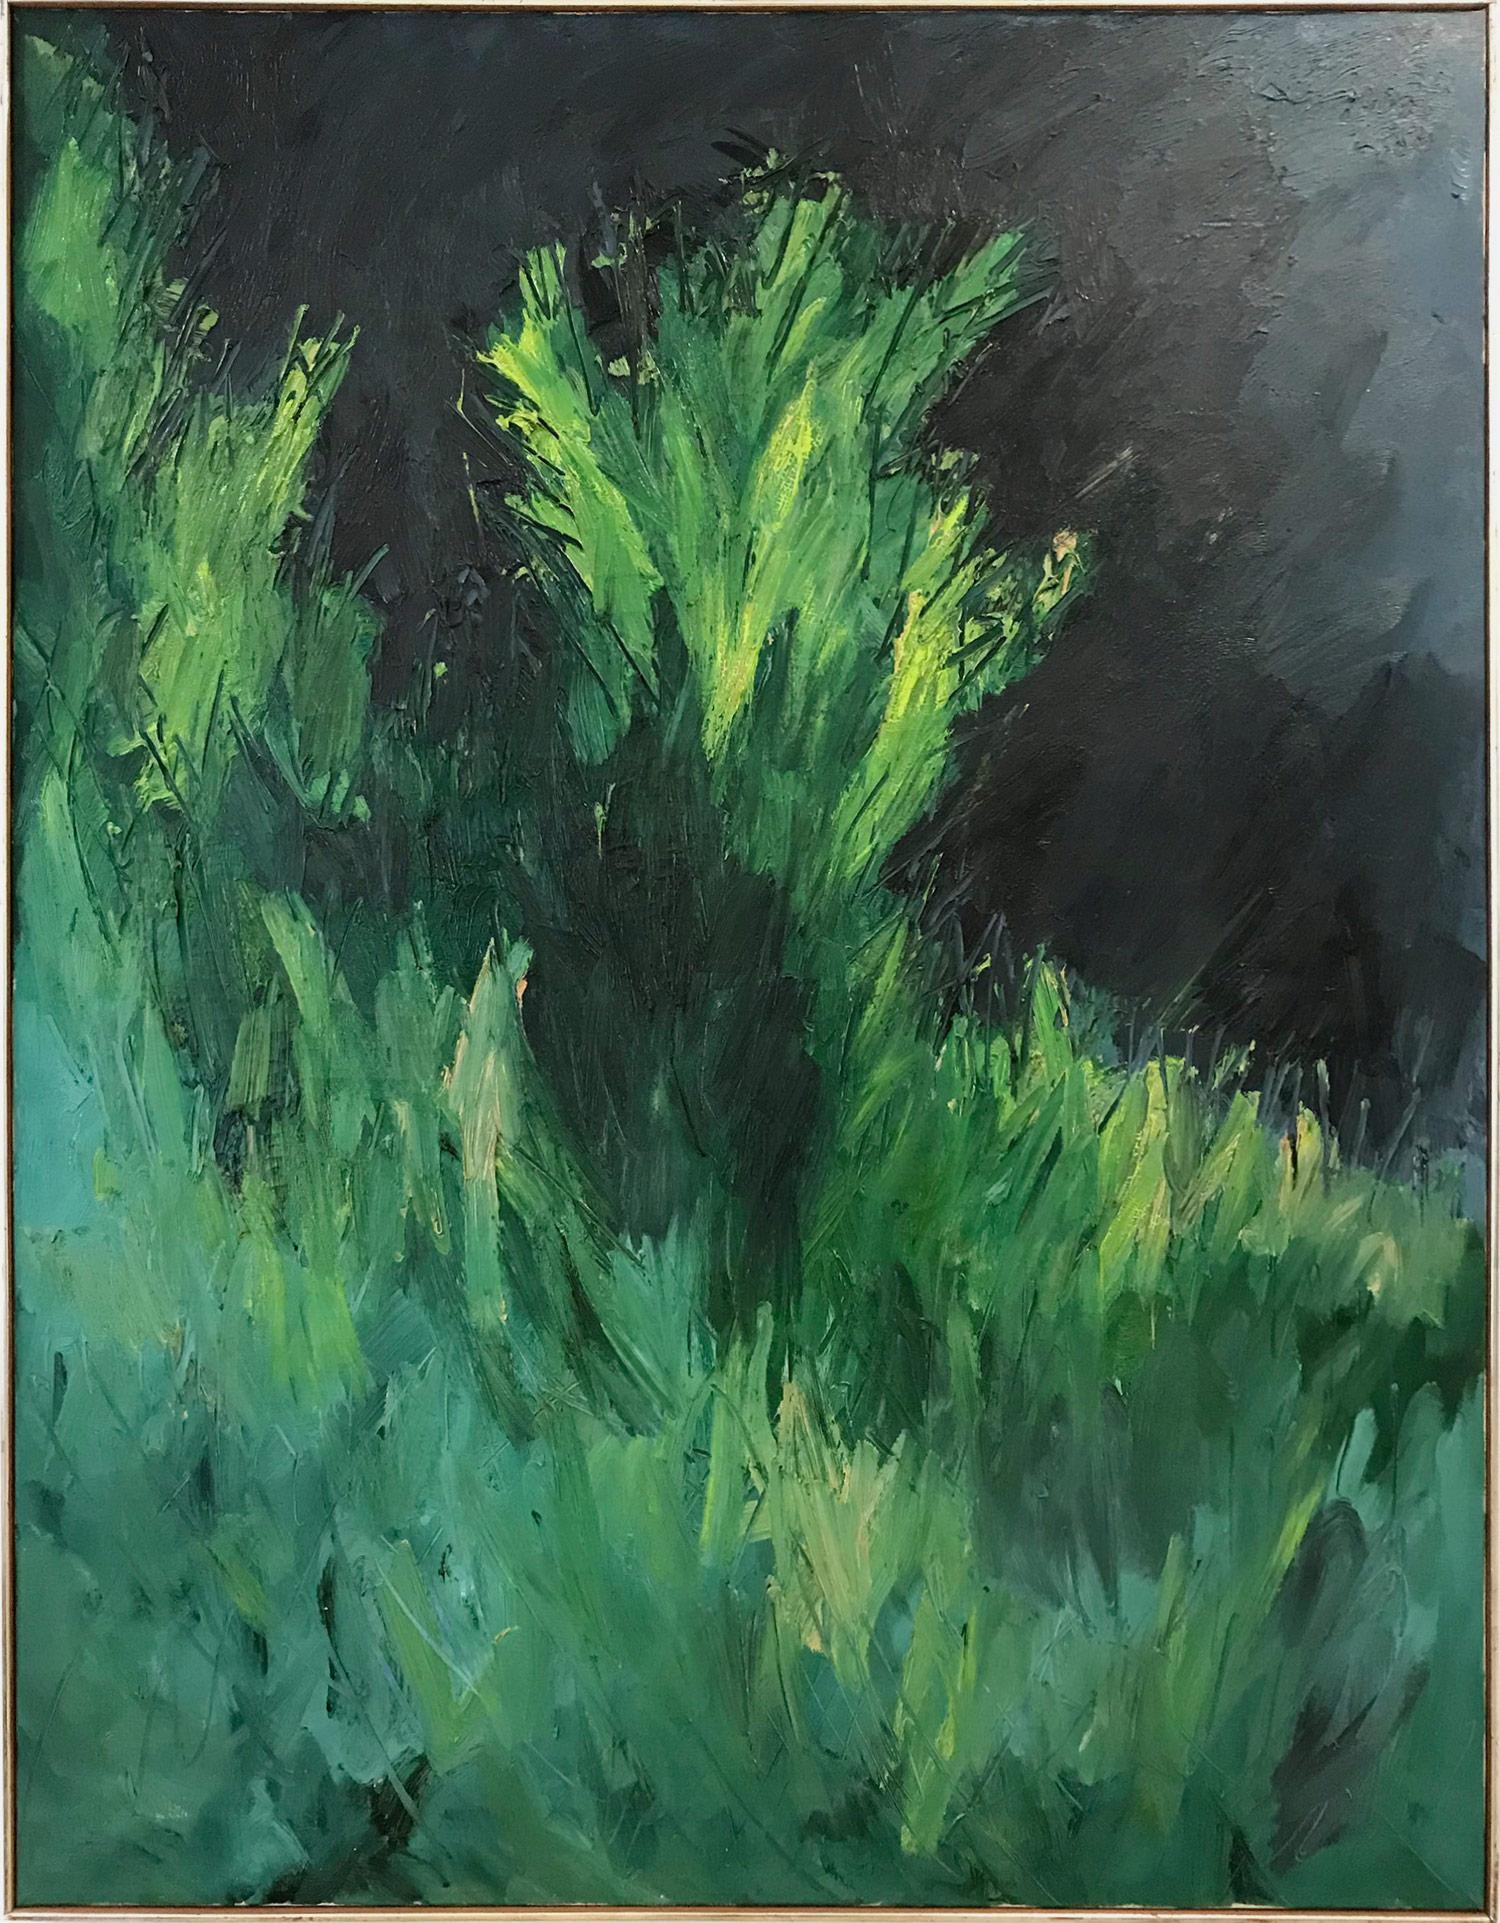 Landscape Painting Nanno de Groot - « Paysage luxuriant avec des verts et des bleus » - Peinture à l'huile moderne du milieu du siècle sur toile